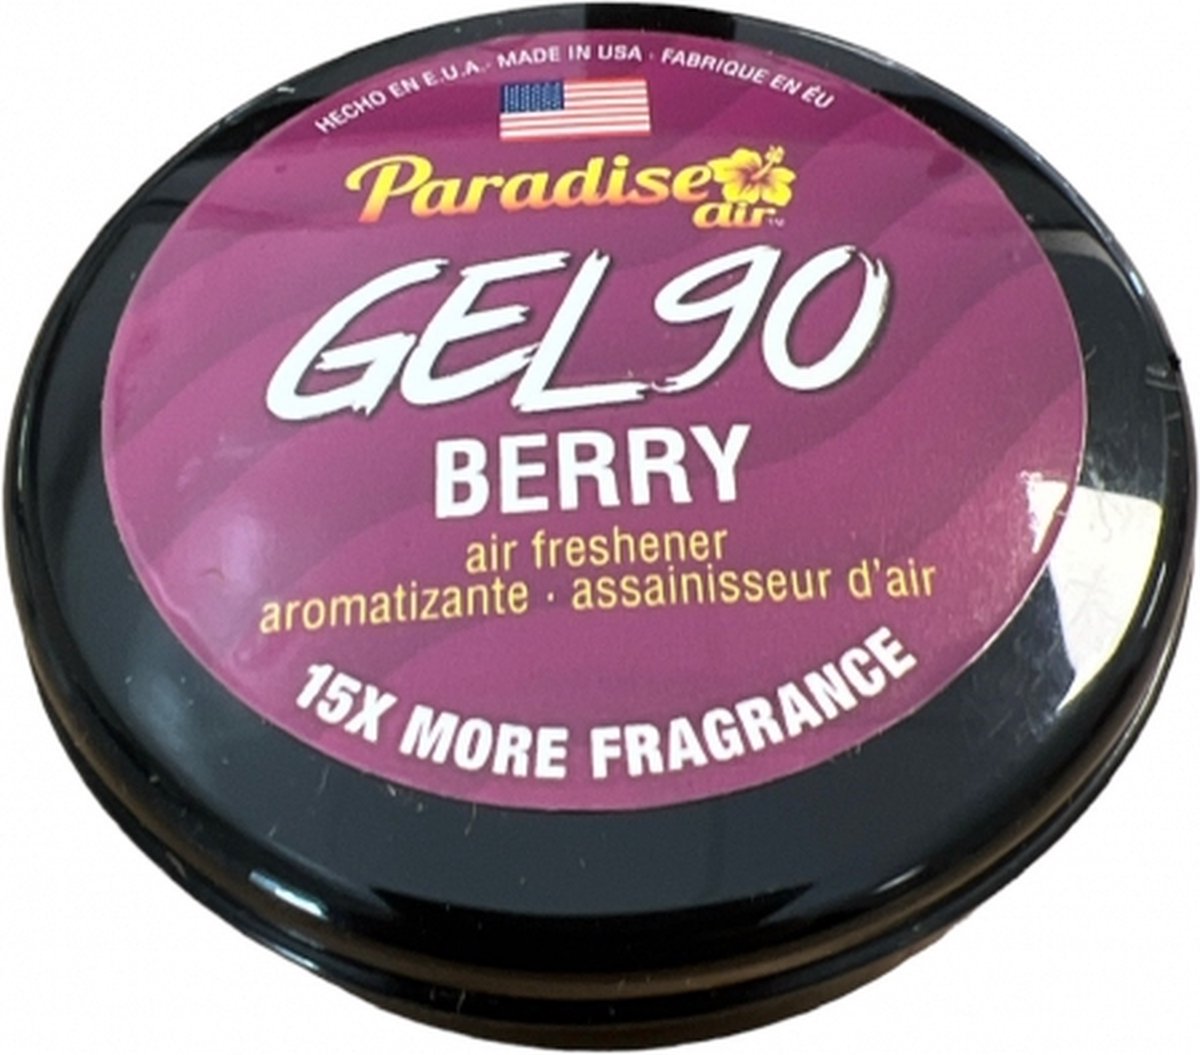 Paradise Air - Car Airfreshner Gel90 - Berry